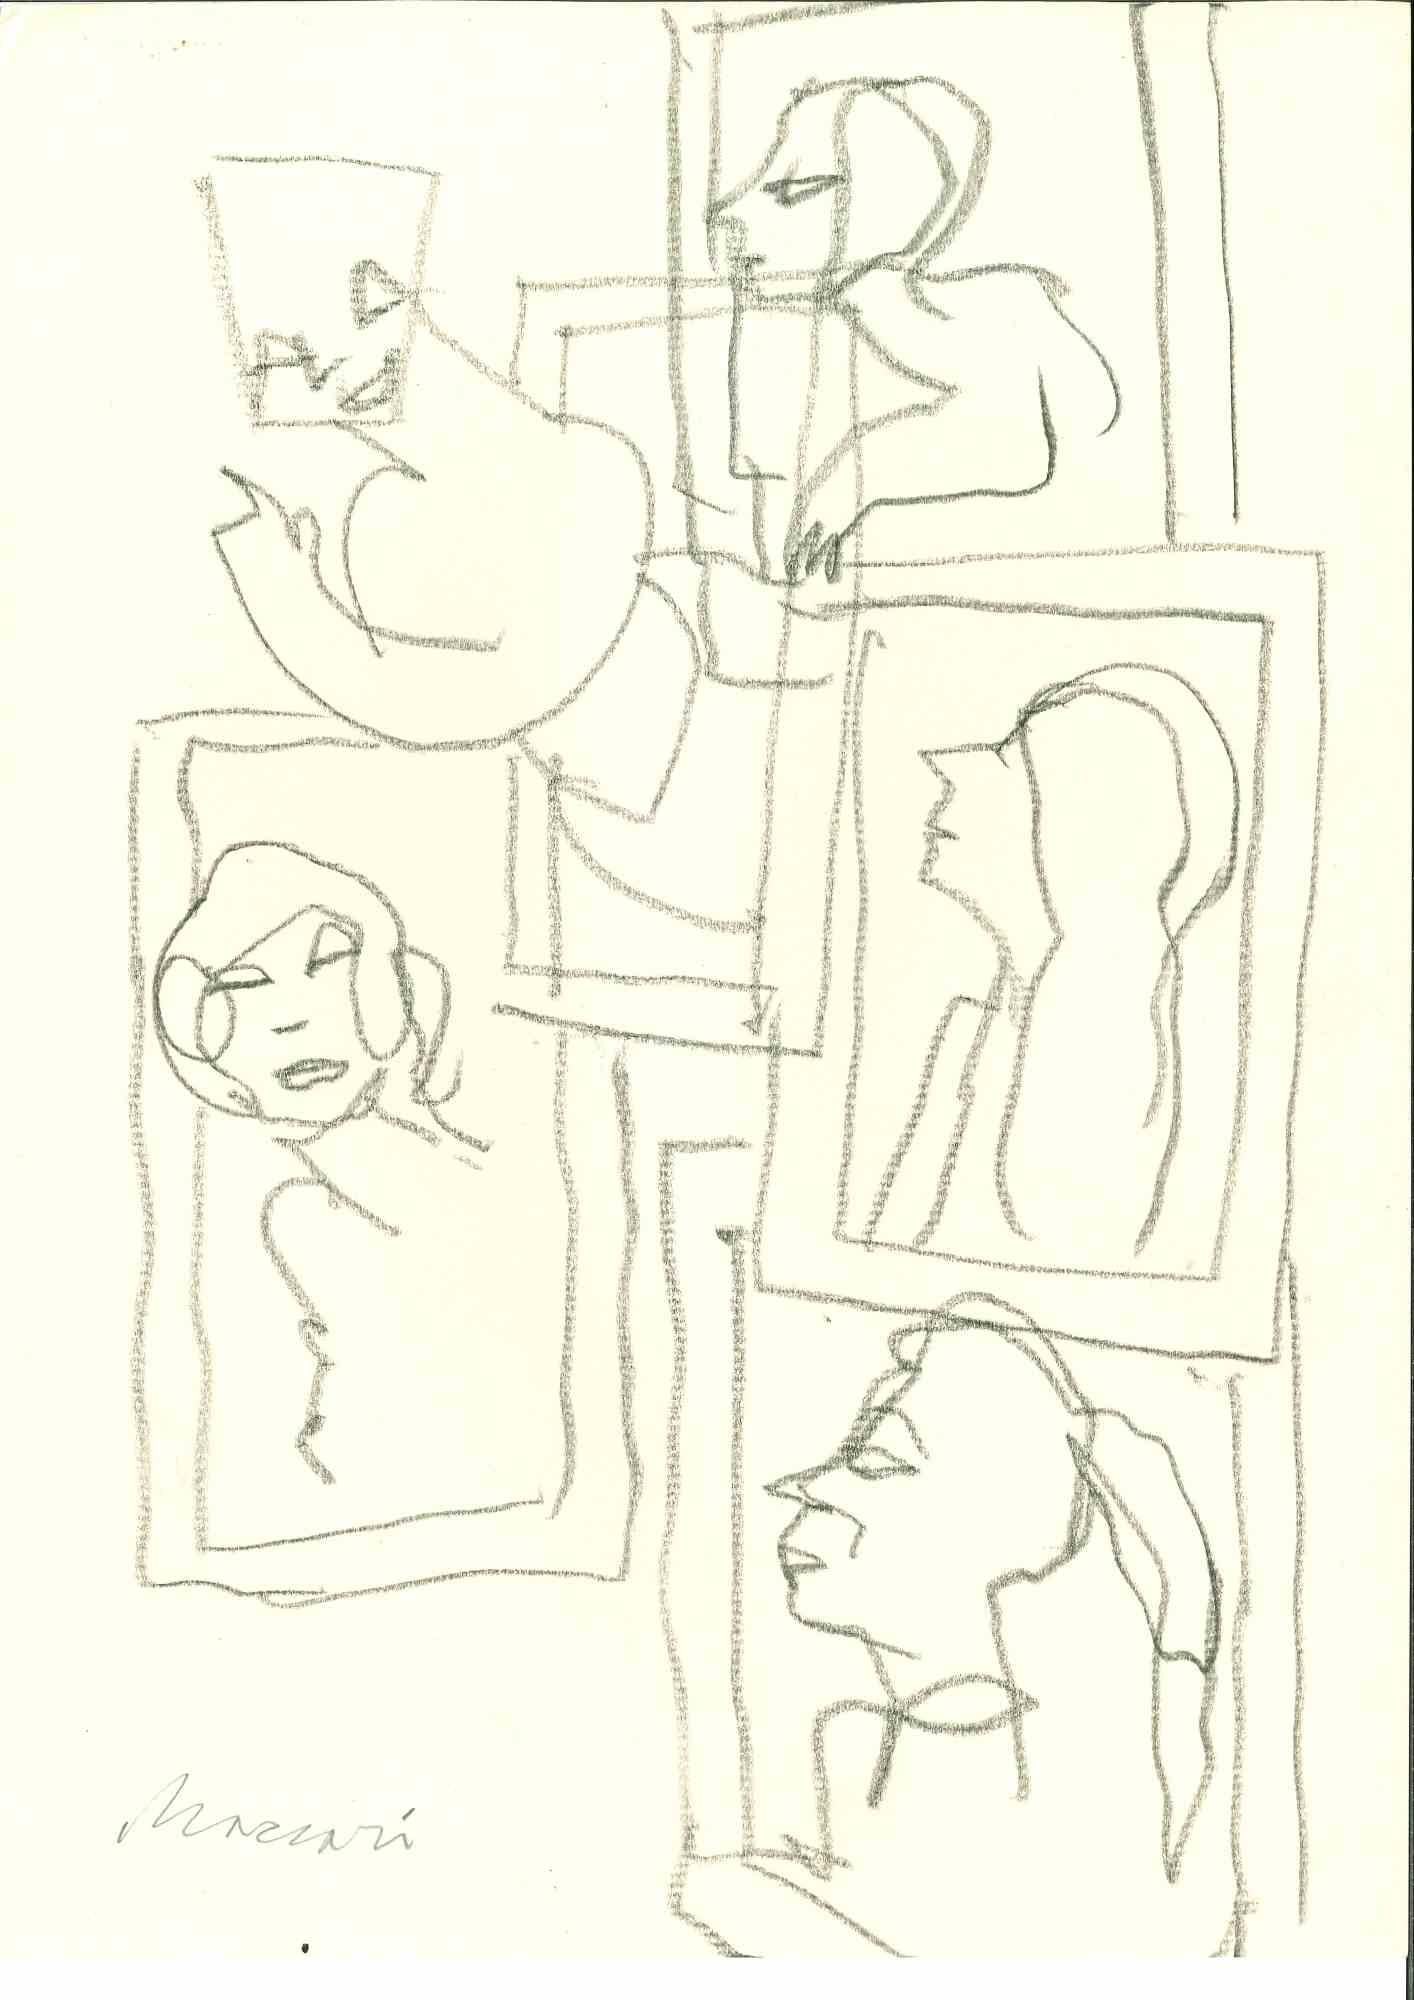 Women in Frames ist eine Bleistiftzeichnung realisiert von Mino Maccari  (1924-1989) in den 1960er Jahren.

Handsigniert am unteren Rand.

Gute Bedingungen.

Mino Maccari (Siena, 1924-Rom, 16. Juni 1989) war ein italienischer Schriftsteller, Maler,